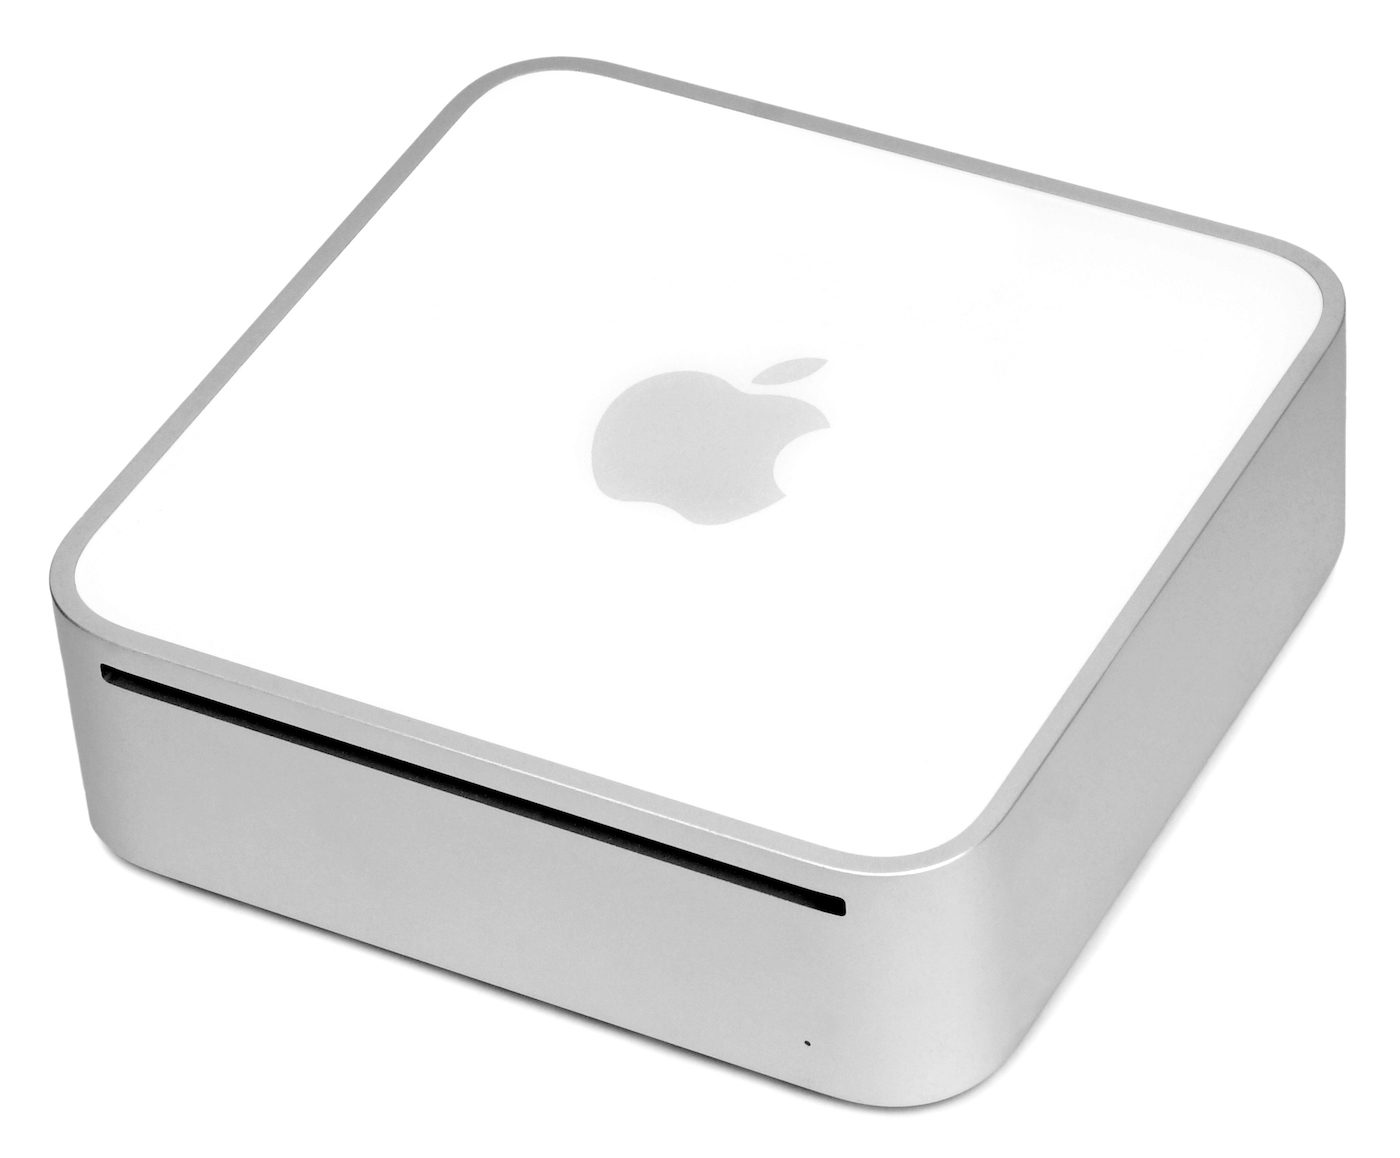 first generation mac mini